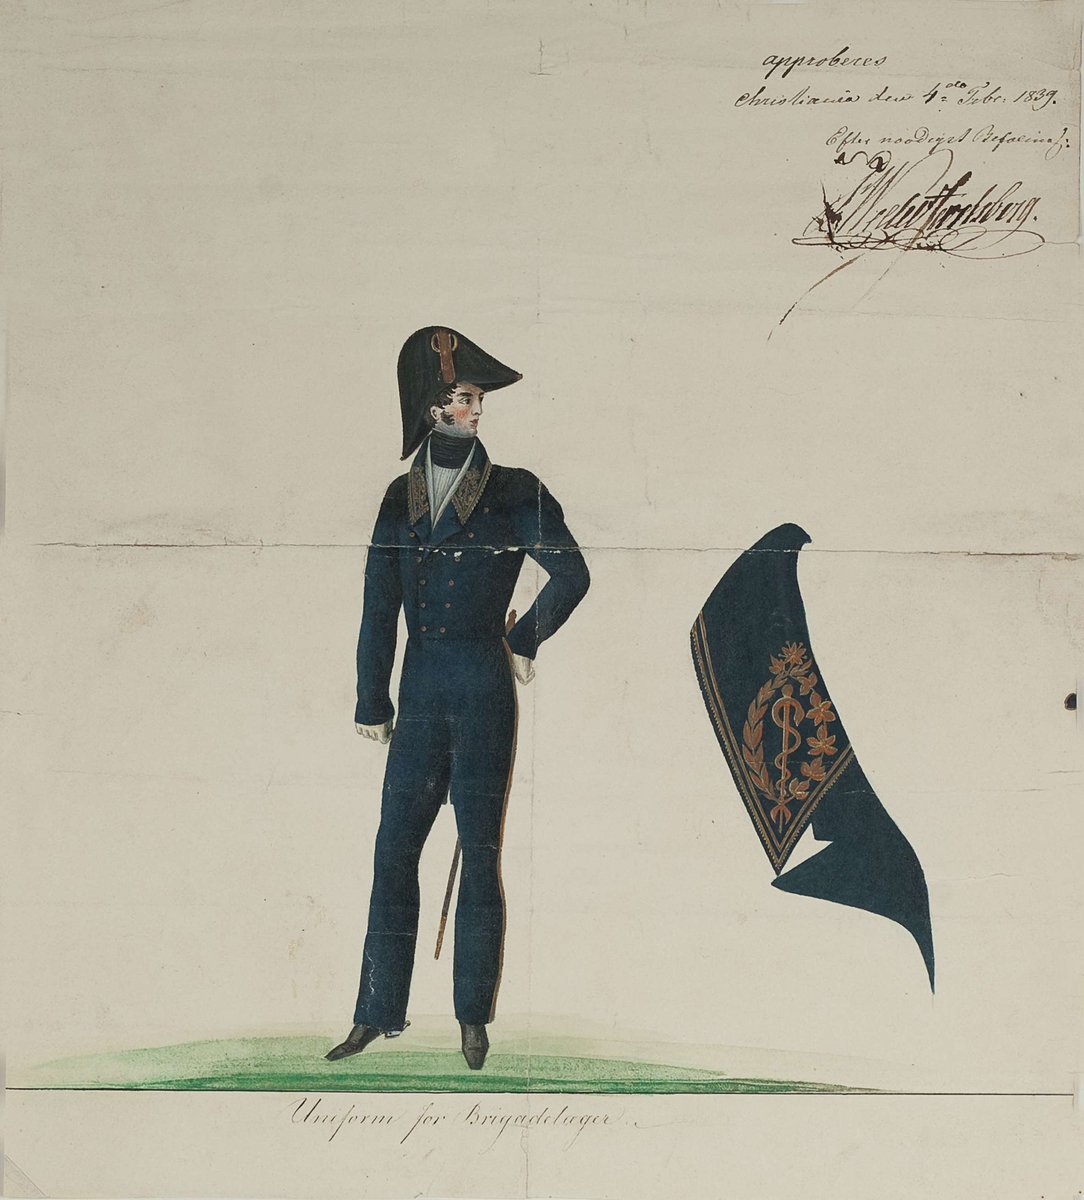 Approbasjonstegning for uniform til brigadelegen, 1839. Tekst: Uniform for Brigadelægen. Approberes Christiania den 4de Febr. 1839.